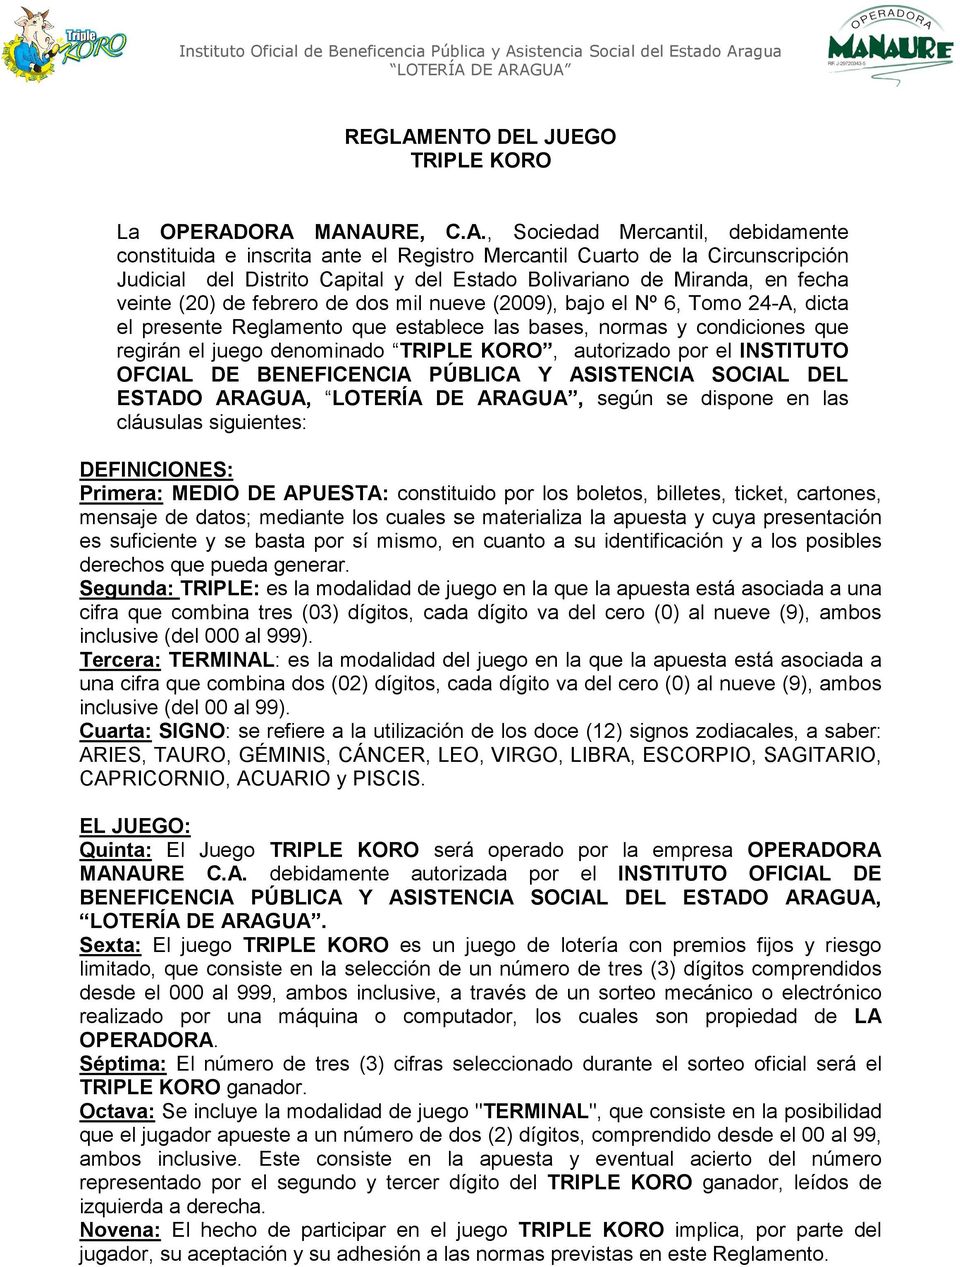 ORA MANAURE, C.A., Sociedad Mercantil, debidamente constituida e inscrita ante el Registro Mercantil Cuarto de la Circunscripción Judicial del Distrito Capital y del Estado Bolivariano de Miranda, en